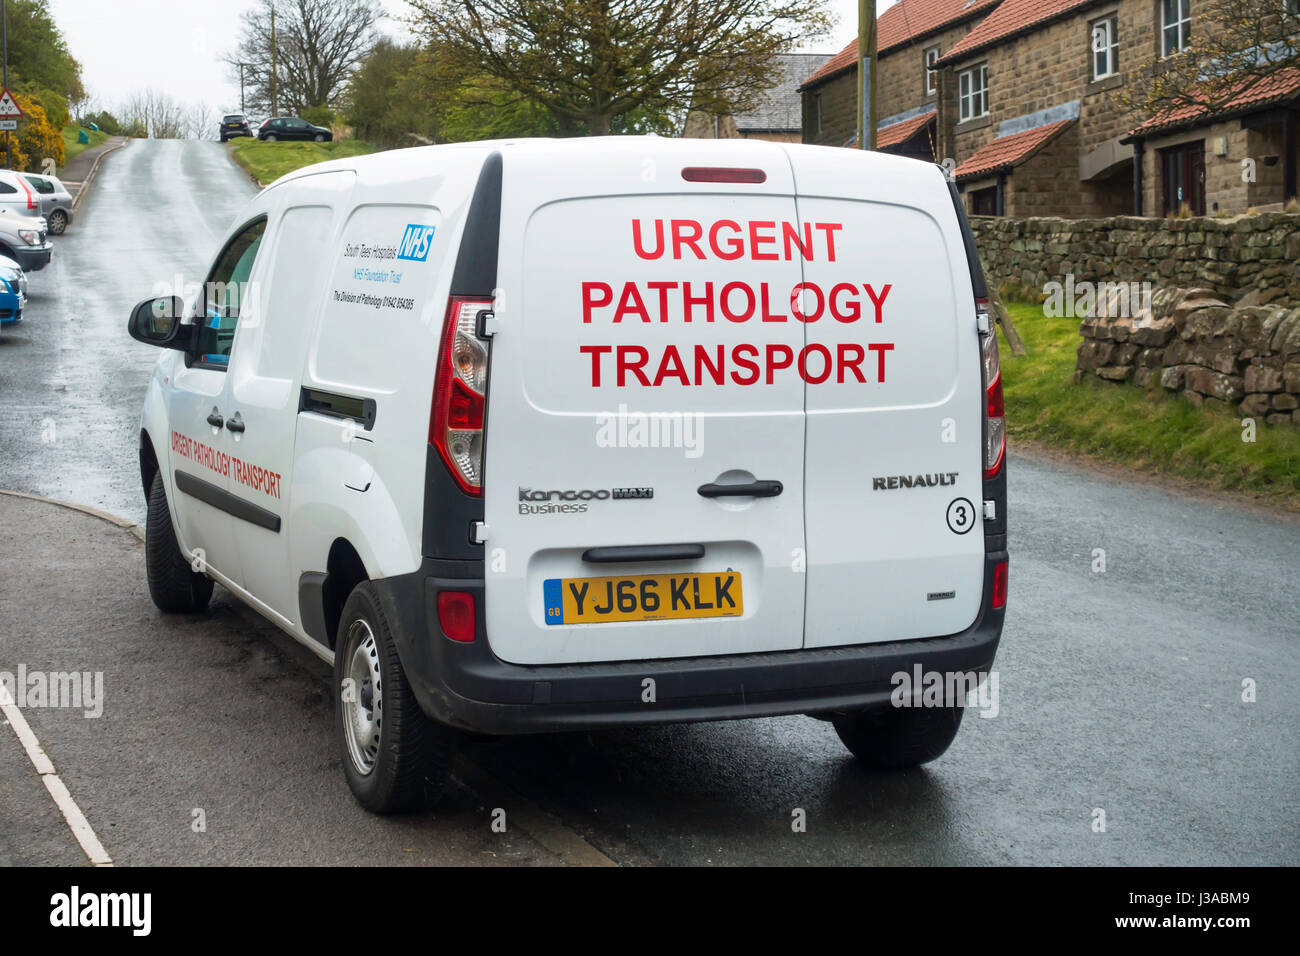 Eine kleine weiße National Health Service Van markiert Eiltransporte Pathologie in einem englischen Landhaus-Dorf Stockfoto